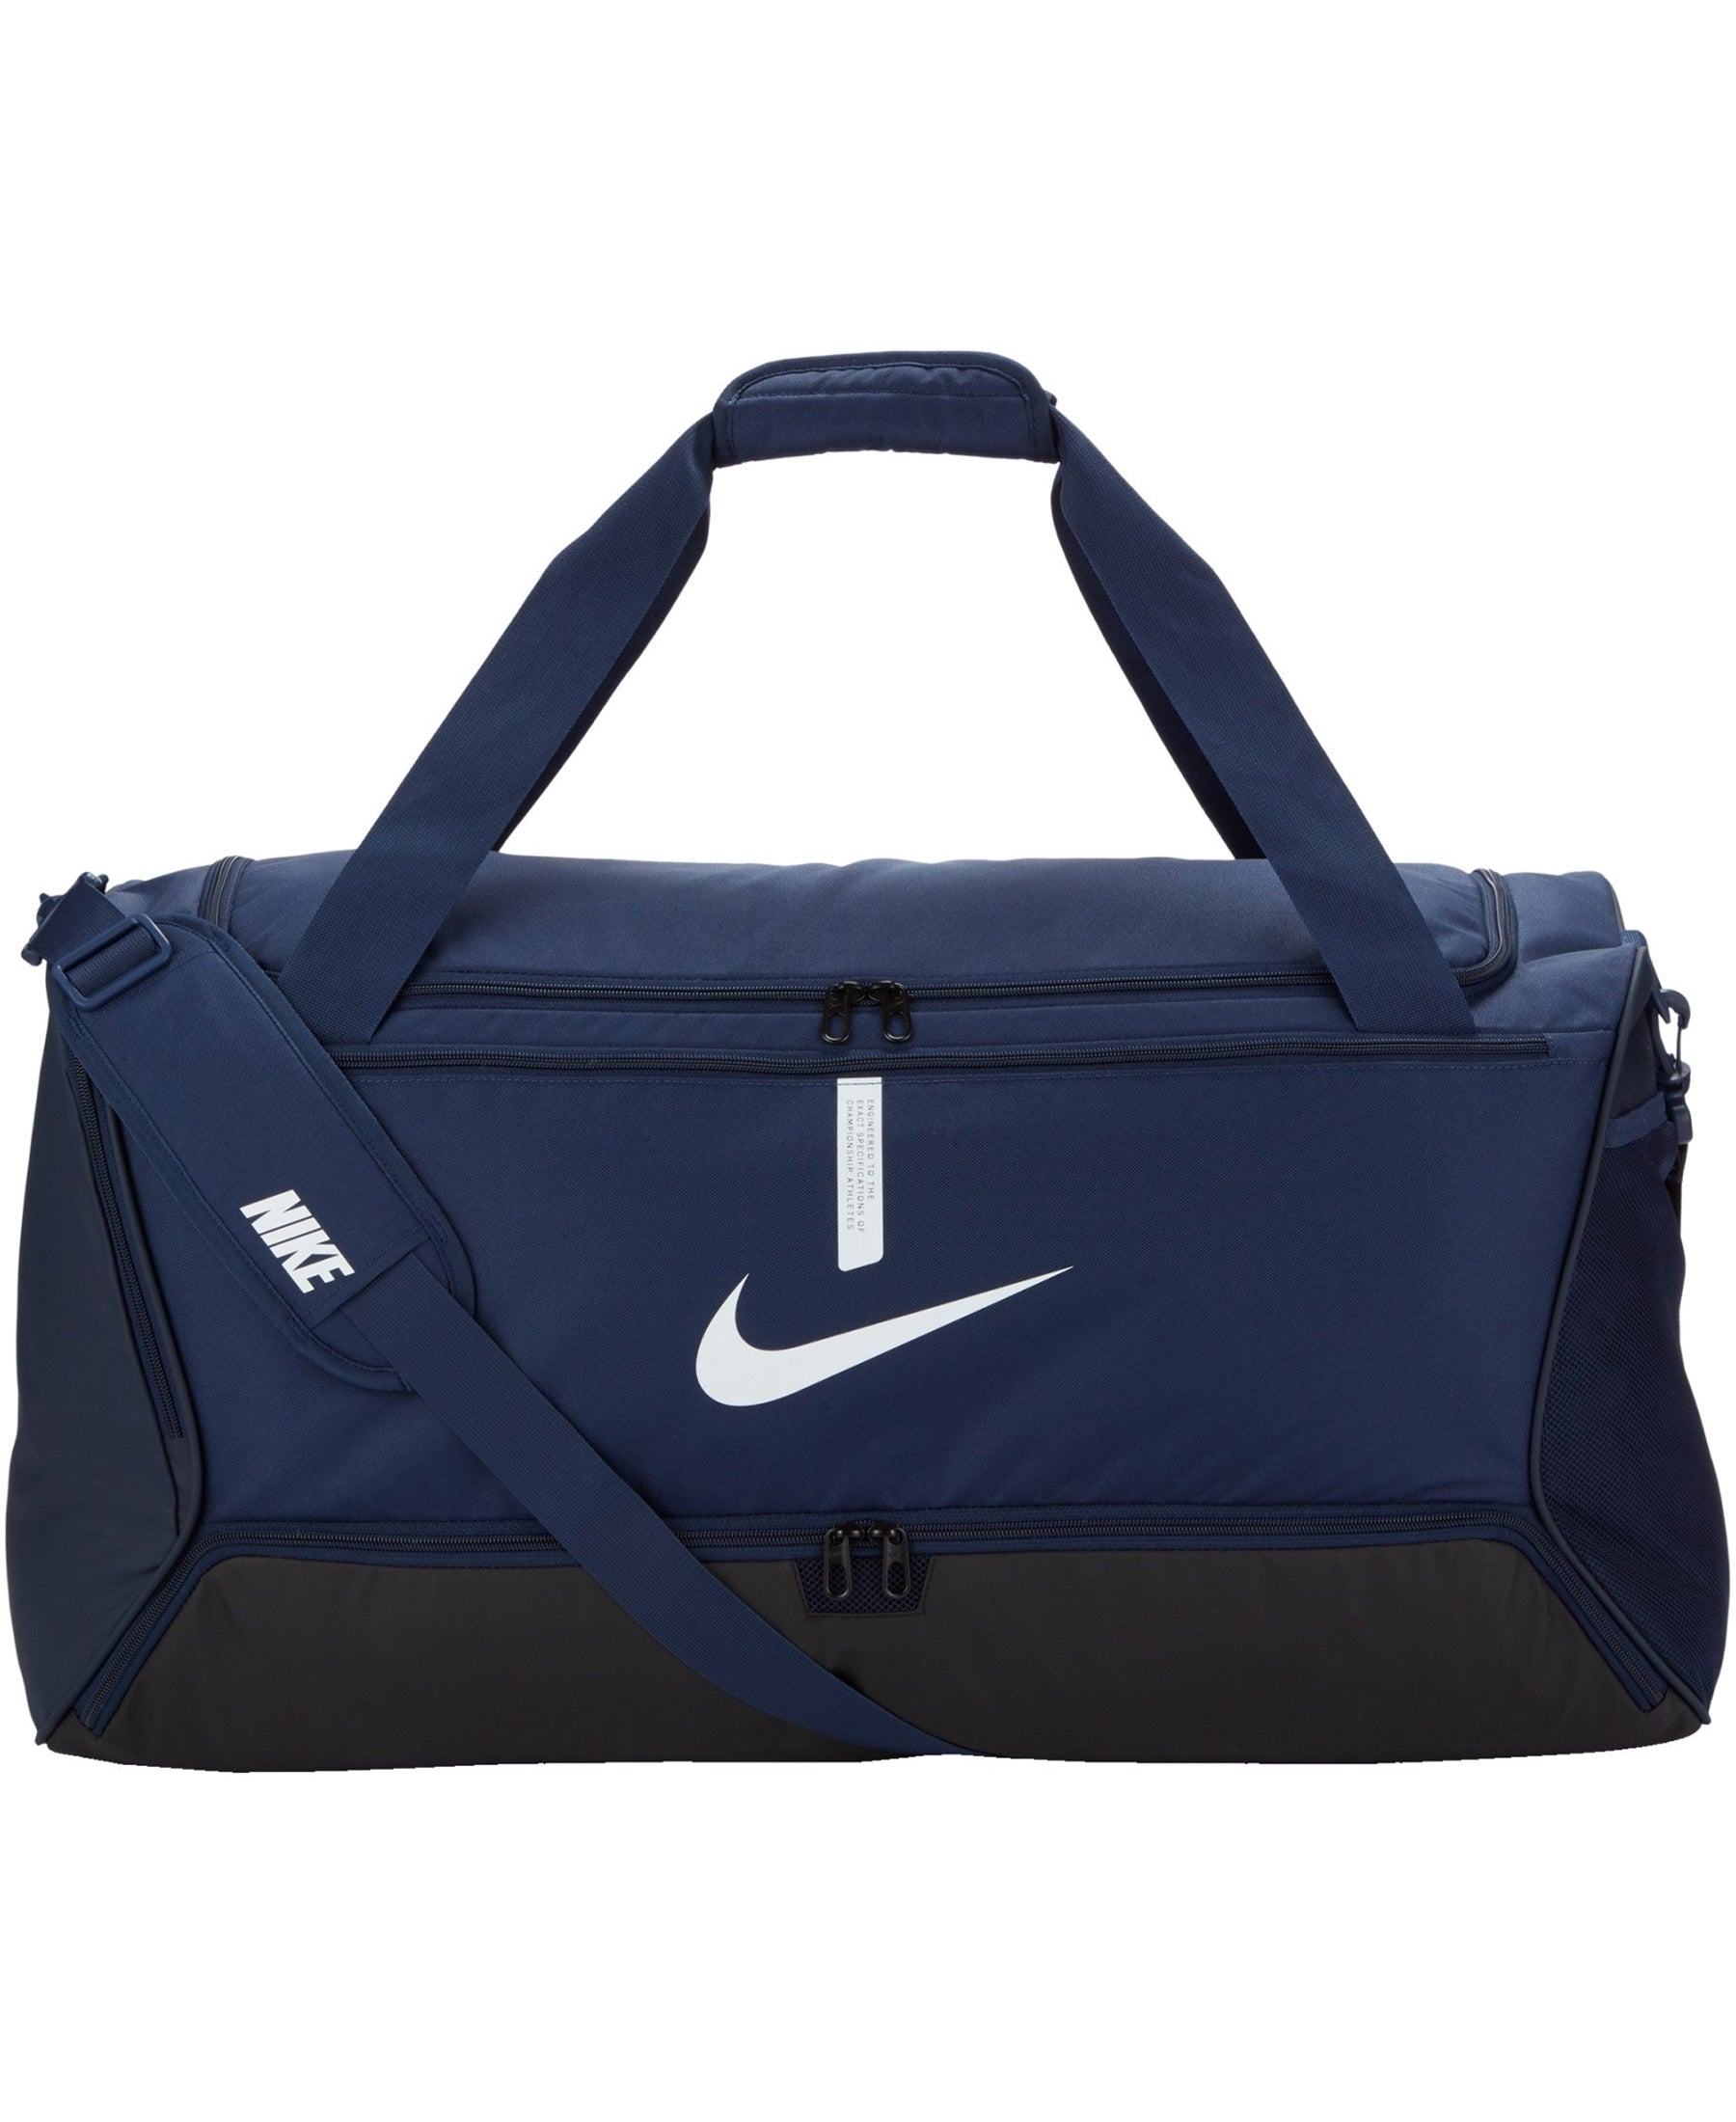 Die Nike Academy Team Duffle Tasche L (CU8089-410) - eine geräumige und funktionale Sporttasche mit Bodenfach, perfekt für den Sport und Alltag. Die ideale Wahl für Sportler und Fitness-Enthusiasten, die auf Qualität und Stil setzen. Bestellen Sie jetzt bei SHOP4TEAMSPORT und seien Sie bestens ausgestattet!